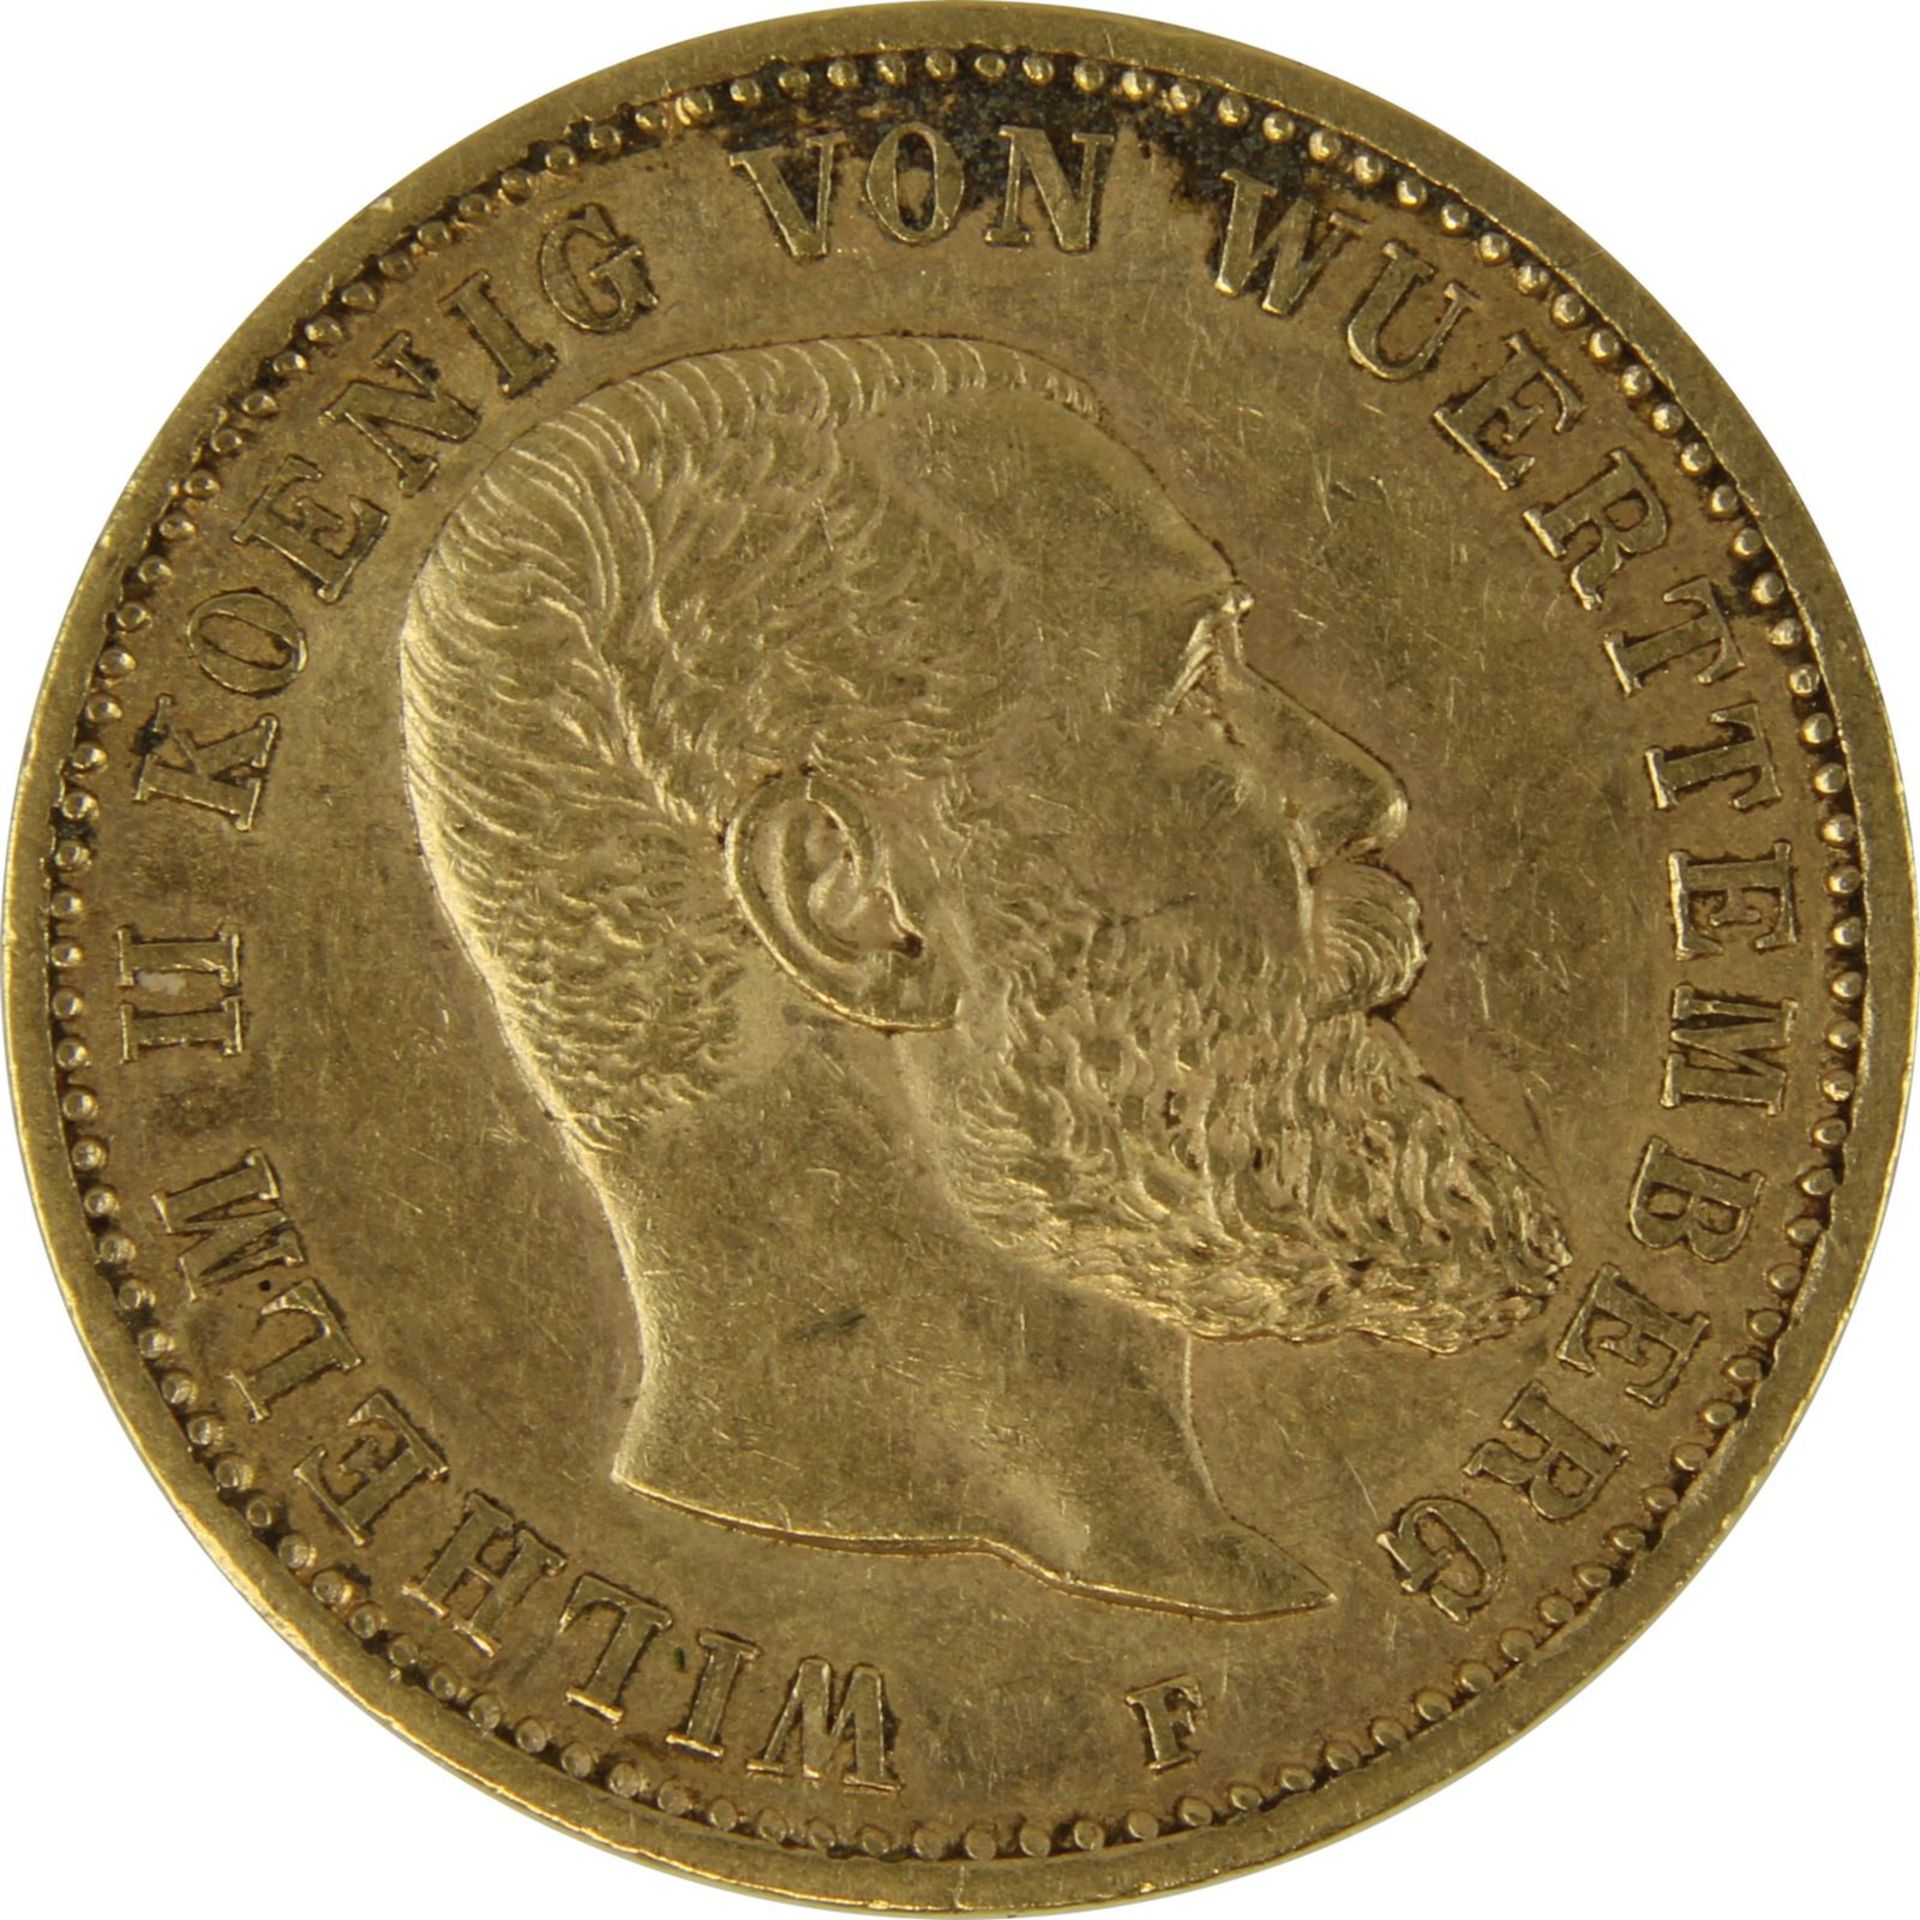 Goldmünze zu 20 Mark, Württemberg - Deutsches Reich 1897, Avers: Kopf Wilhelm II König von - Bild 2 aus 3